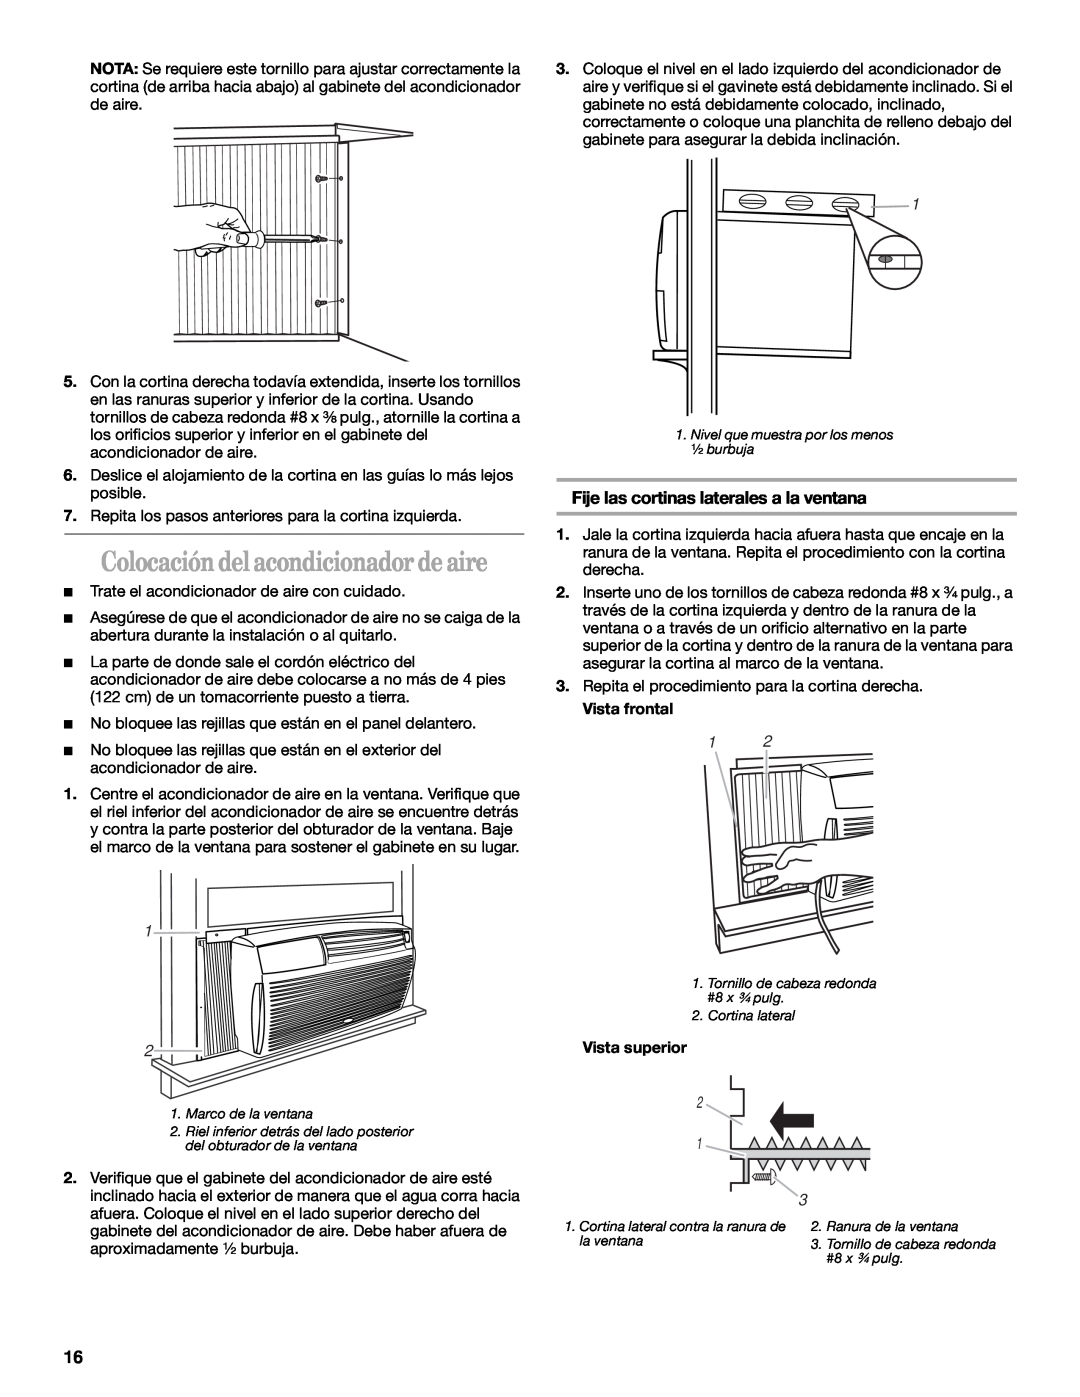 Whirlpool ACQ062MP0 manual Colocación del acondicionador de aire, Fije las cortinas laterales a la ventana 